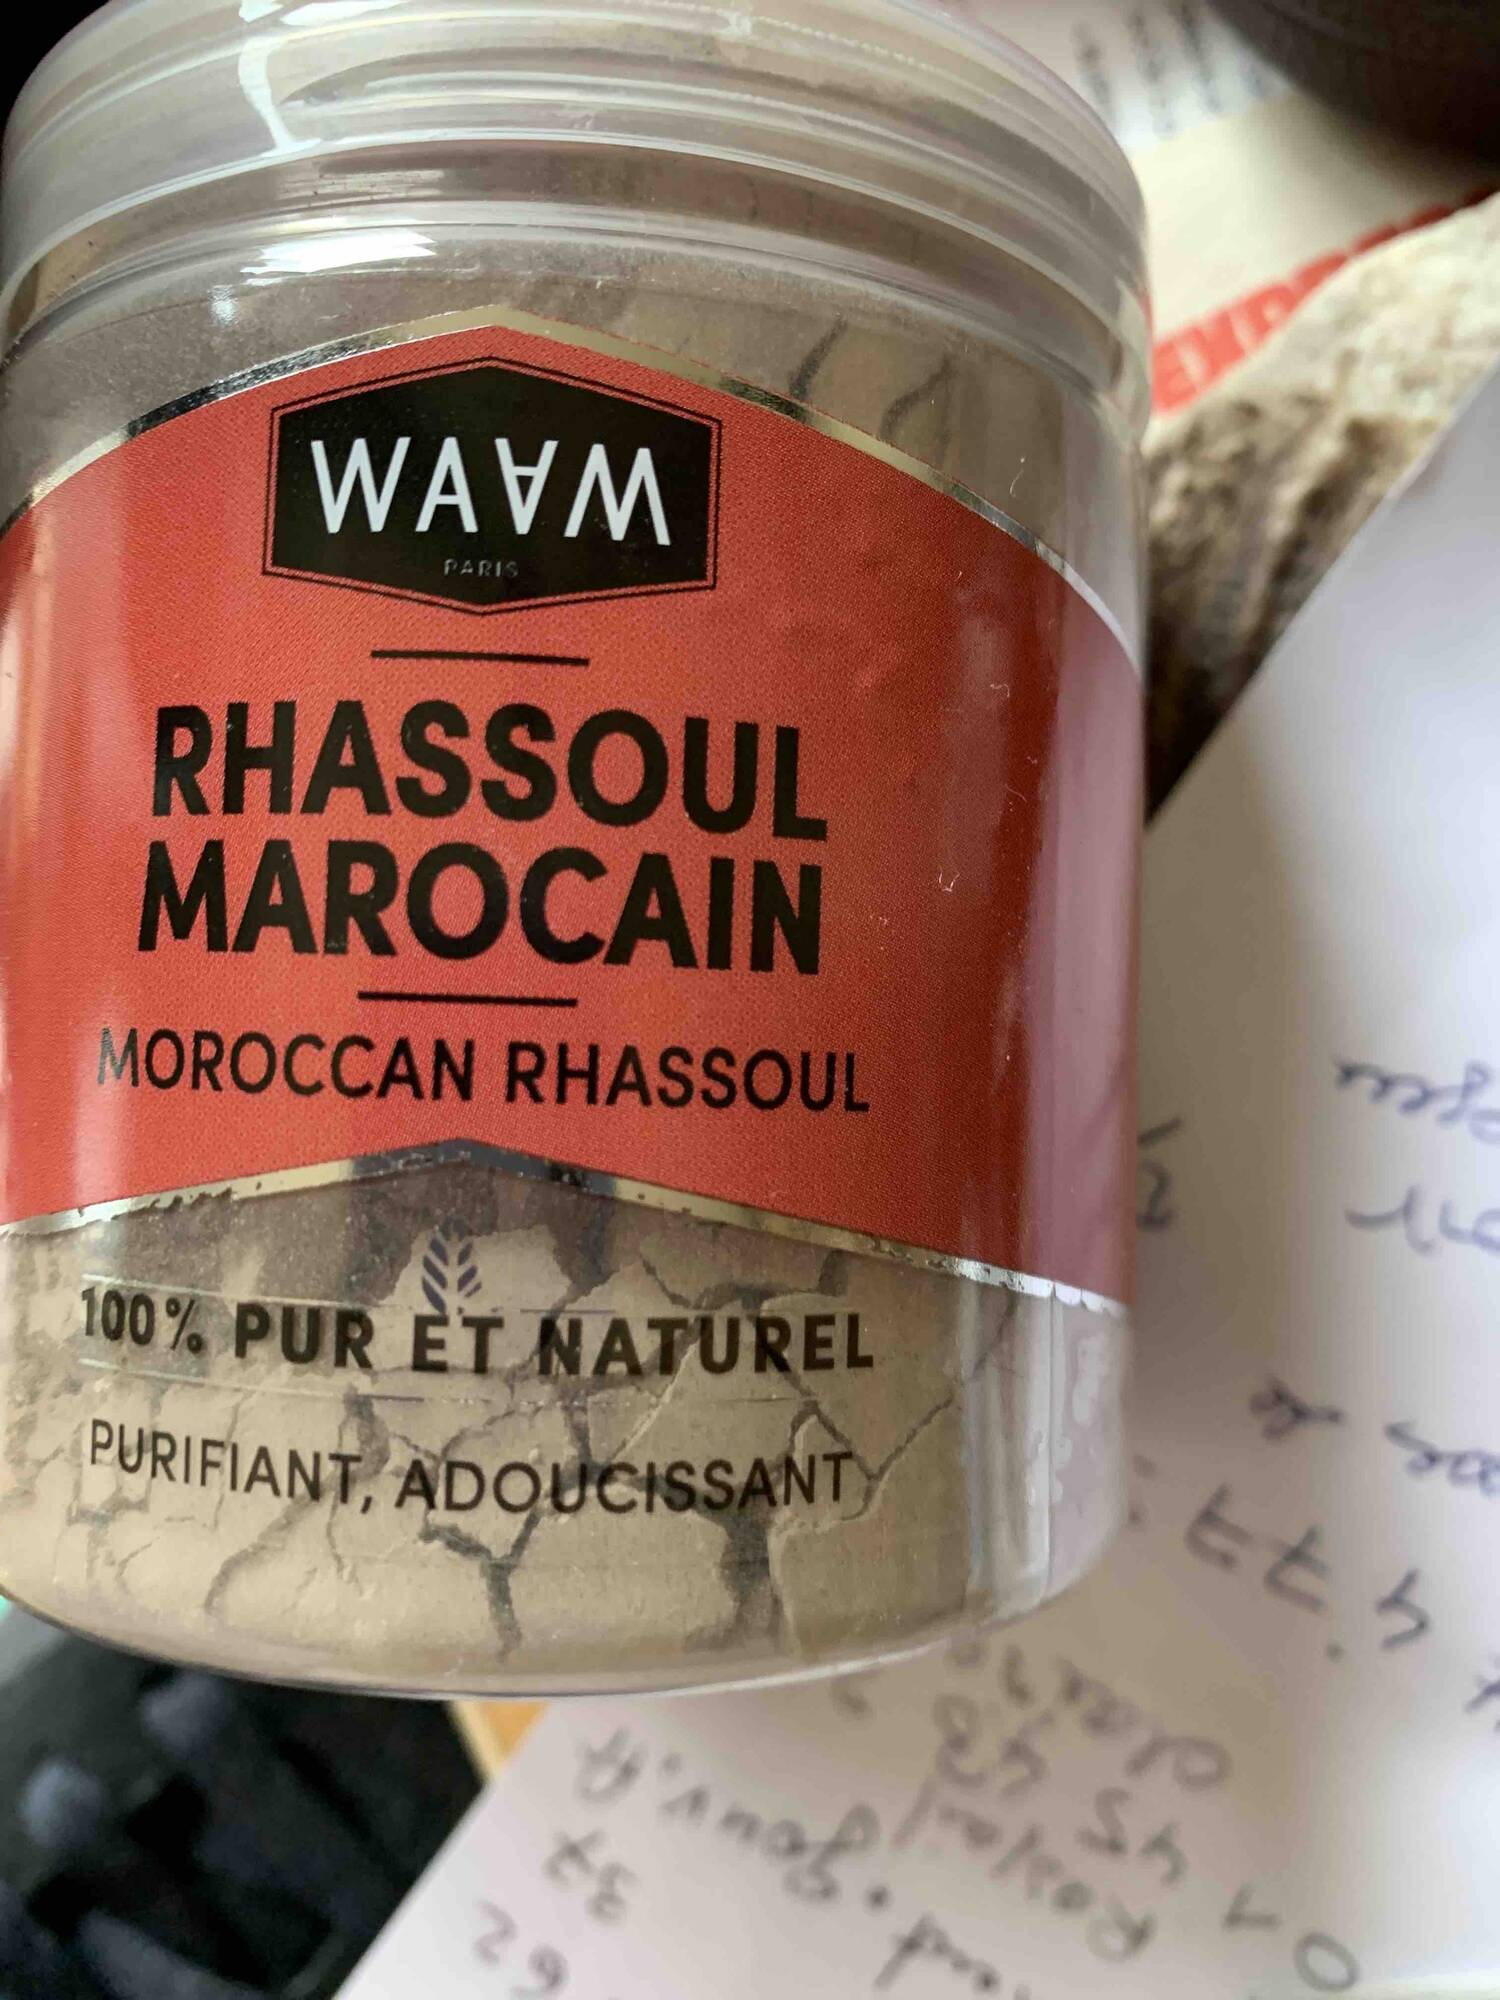 WAAM - Rhassoul marocain